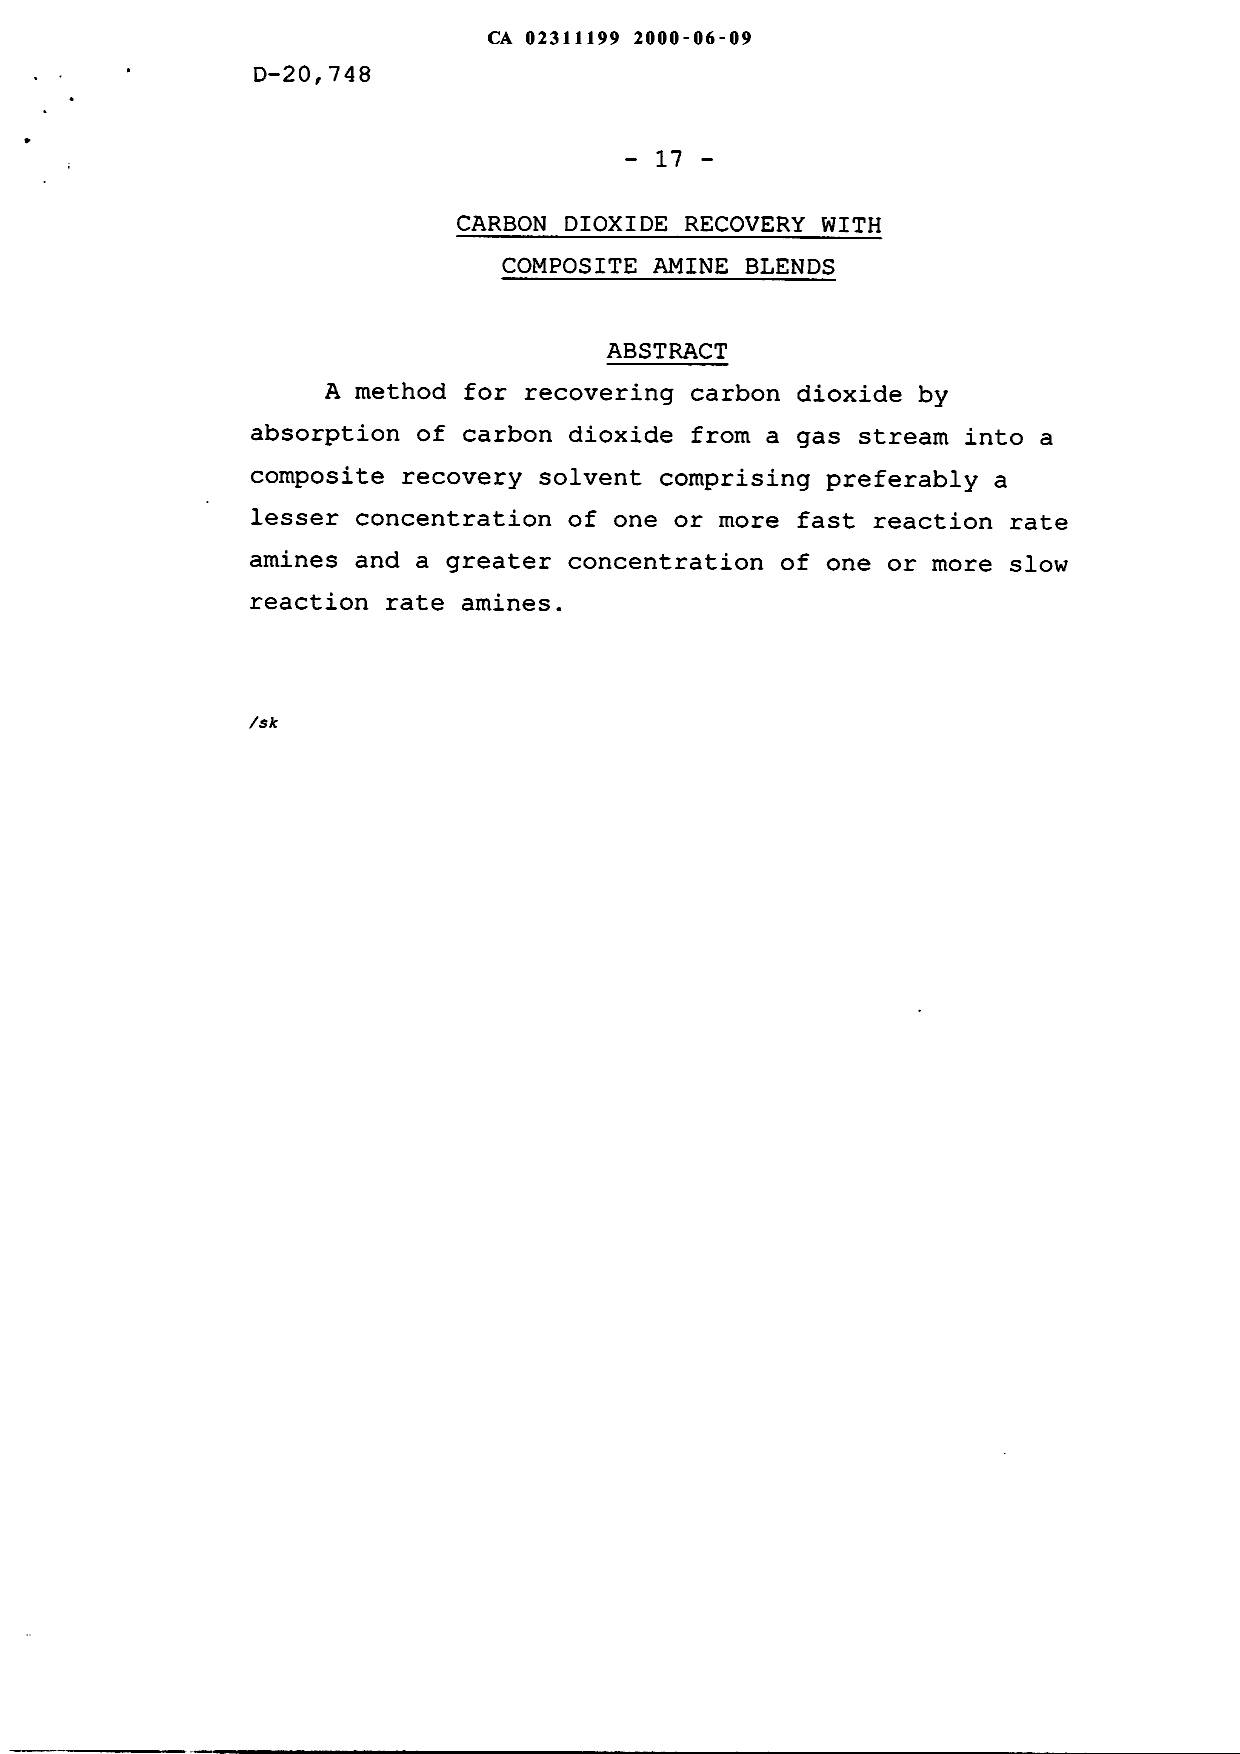 Document de brevet canadien 2311199. Abrégé 20000609. Image 1 de 1